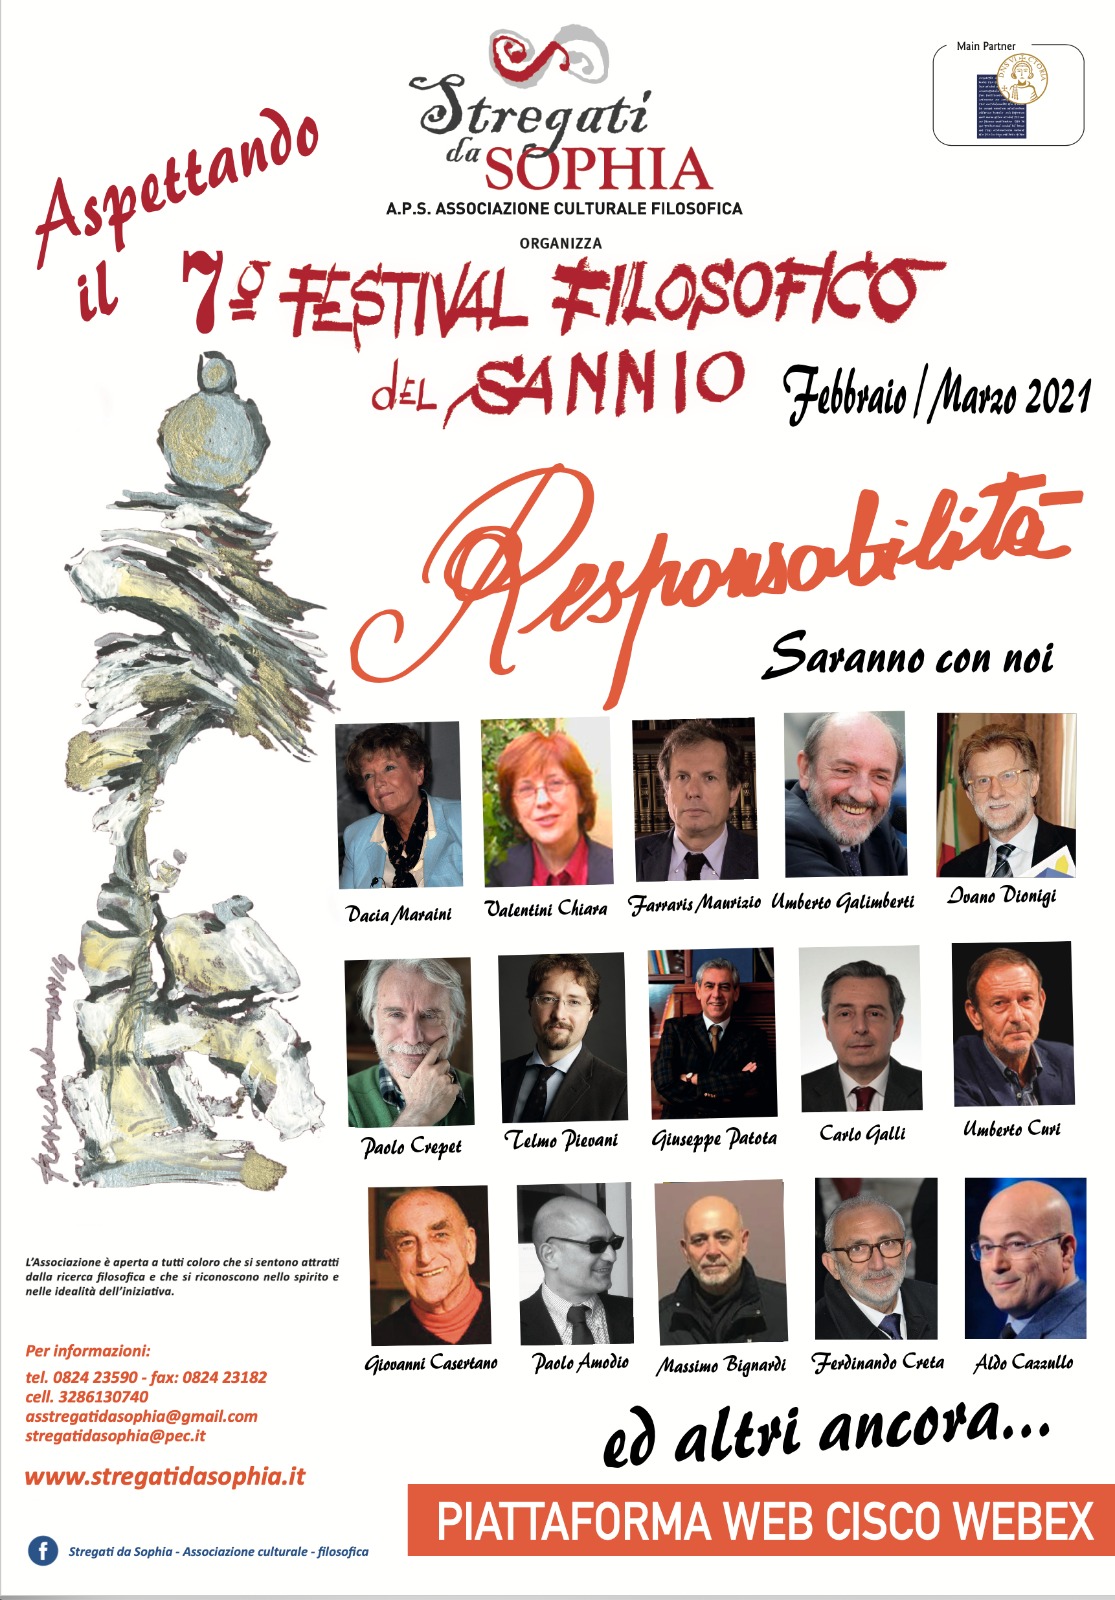 Benevento| Stregati da Sophia, conferenza stampa del 7° Festival Filosofico del Sannio